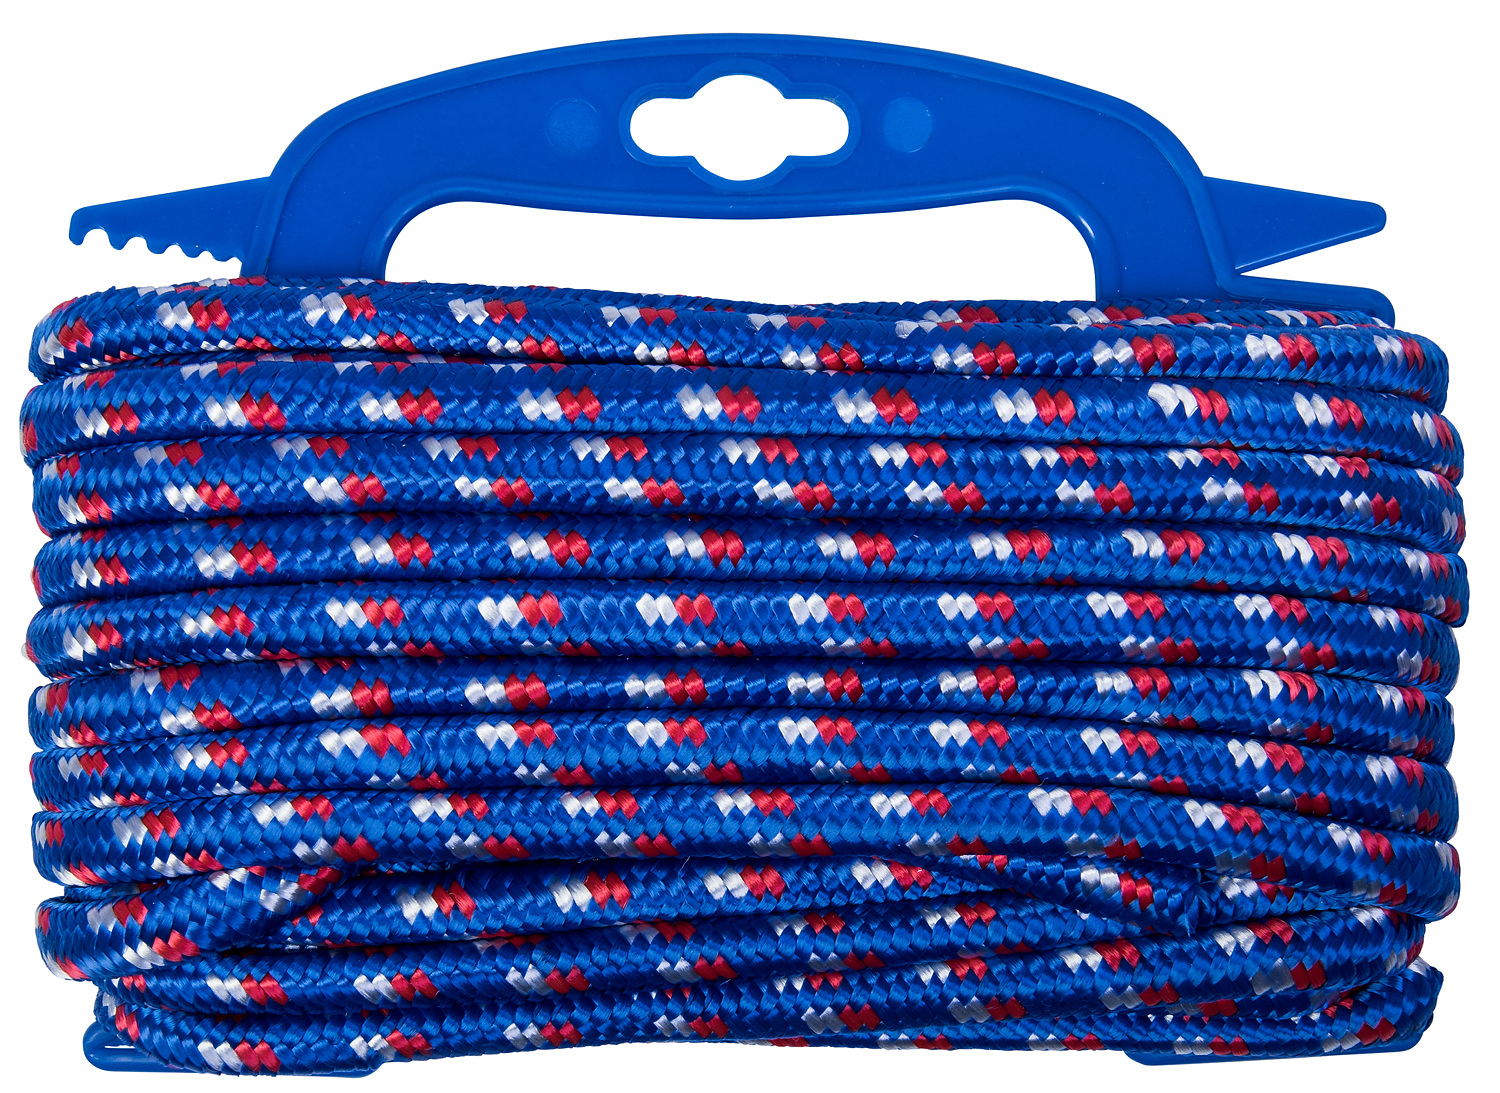 Connex Polypropylen-Seil 16-fach geflochten, max. 27,5 kg, Blau/Rot/Weiß ø 9,5 mm × 15 m